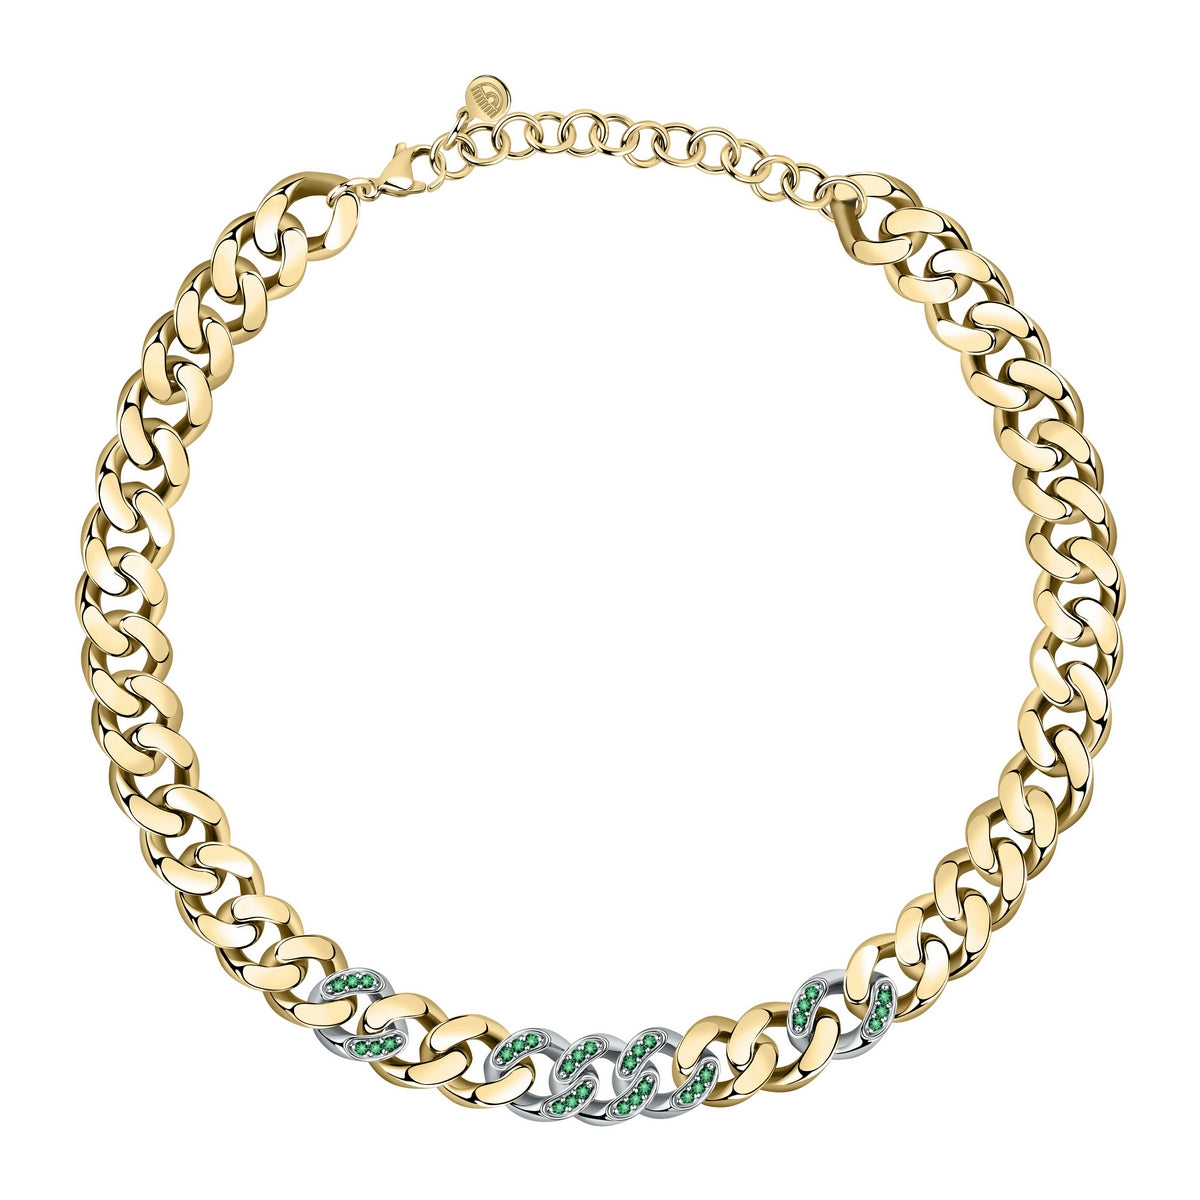 chiara ferragni chain necklace yg big chain with emerald crystals 38cm + 7